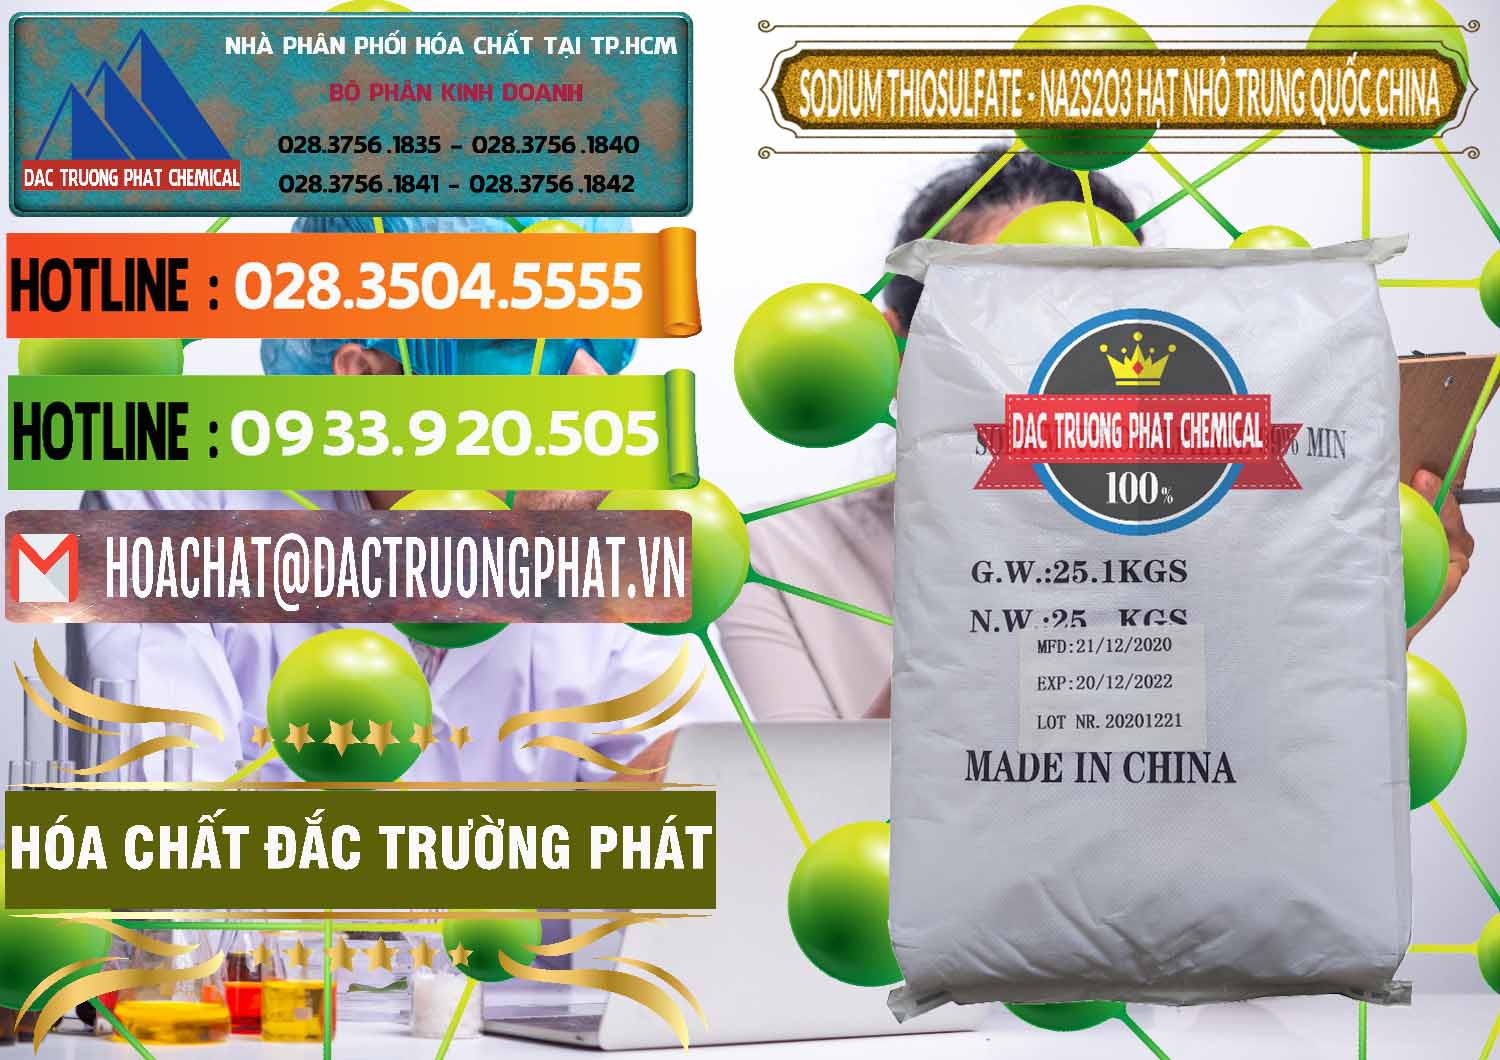 Công ty kinh doanh & bán Sodium Thiosulfate - NA2S2O3 Hạt Nhỏ Trung Quốc China - 0204 - Cty phân phối và kinh doanh hóa chất tại TP.HCM - cungcaphoachat.com.vn